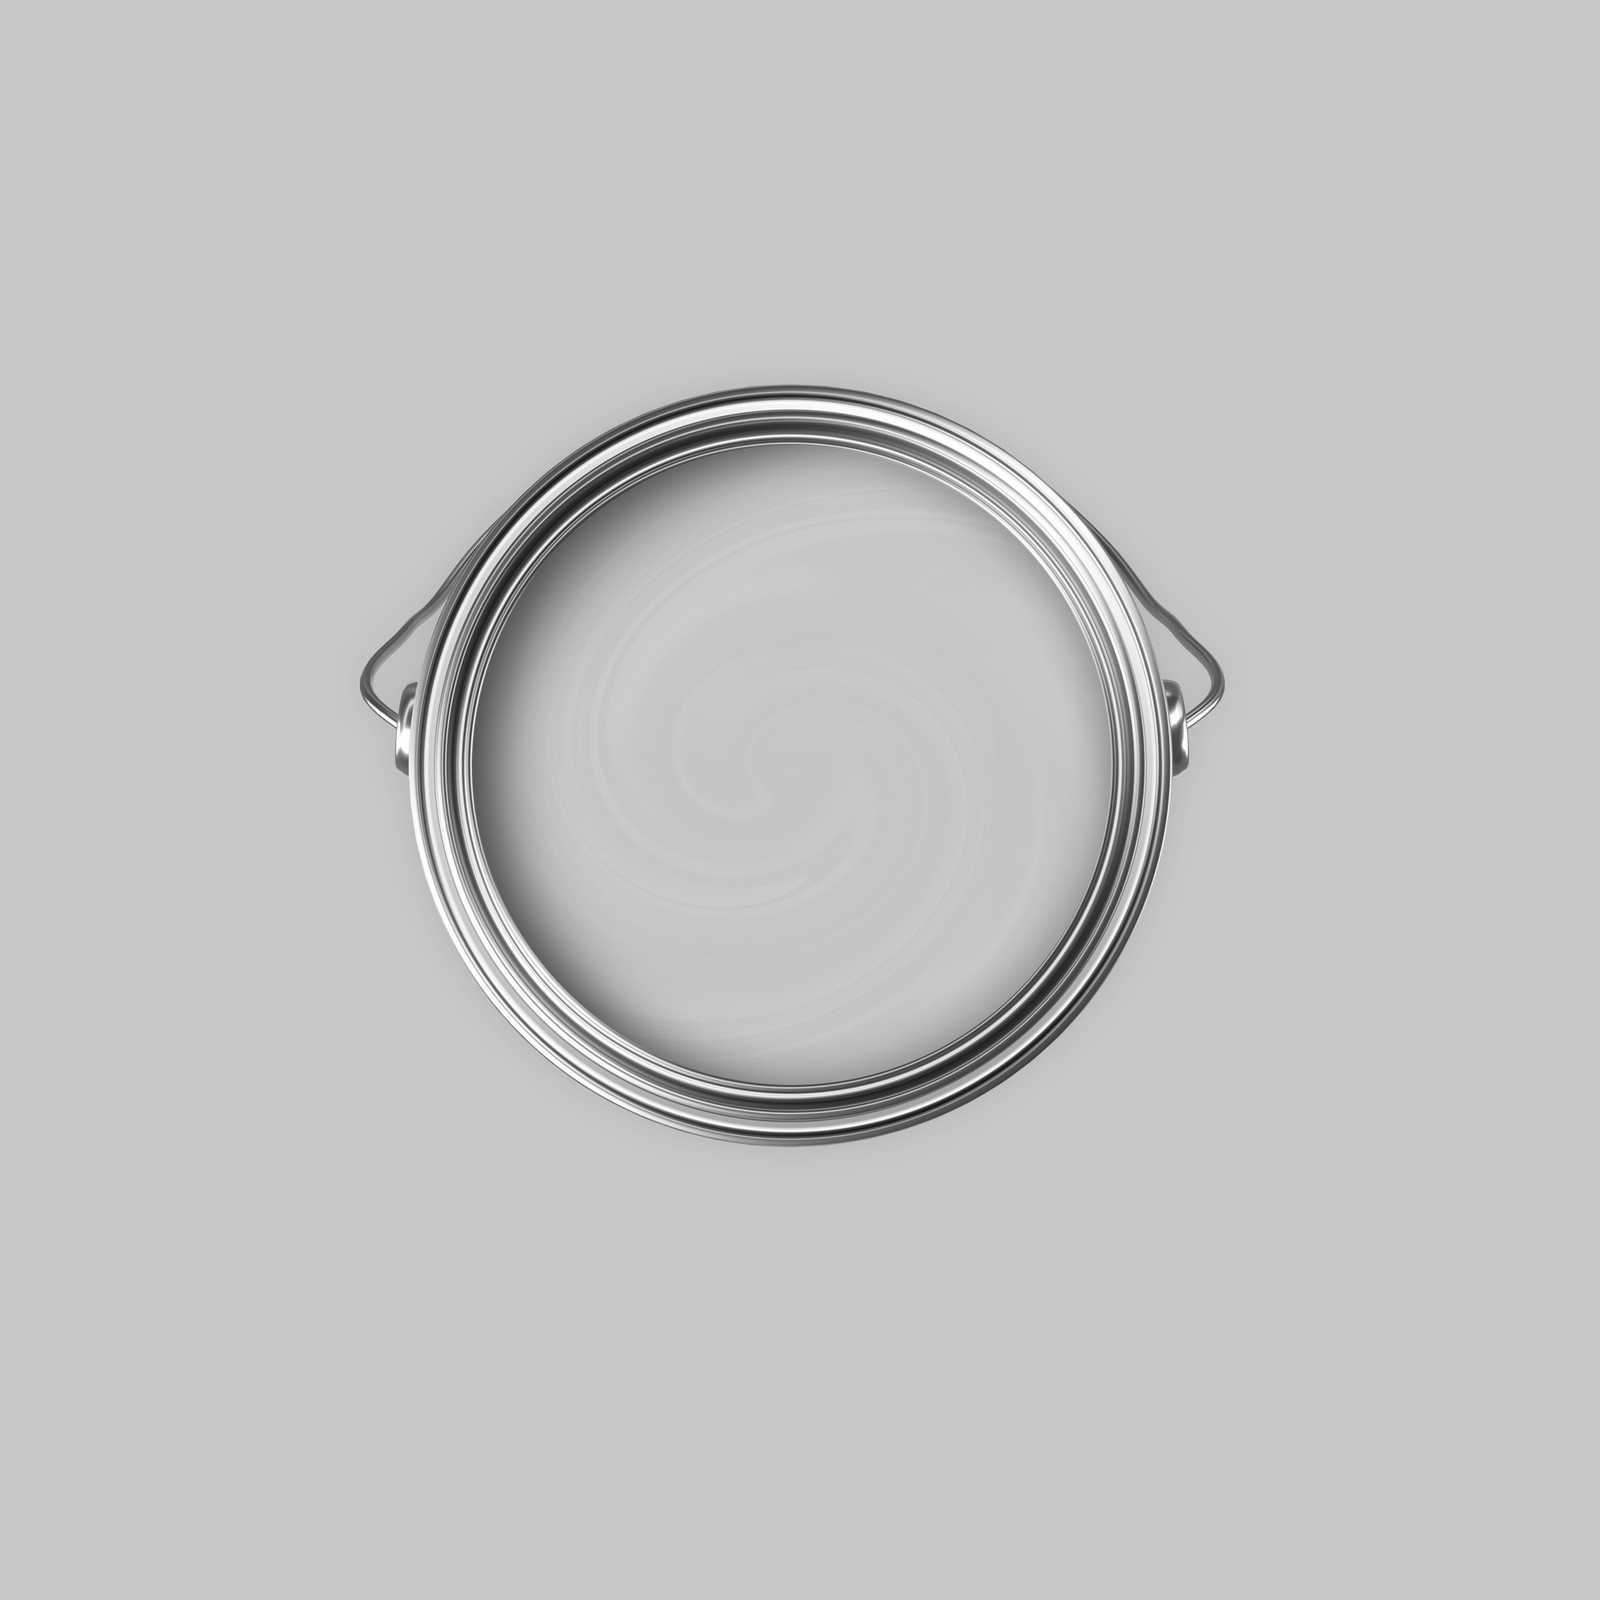             Premium Wandfarbe wohnliches Silber »Creamy Grey« NW109 – 2,5 Liter
        